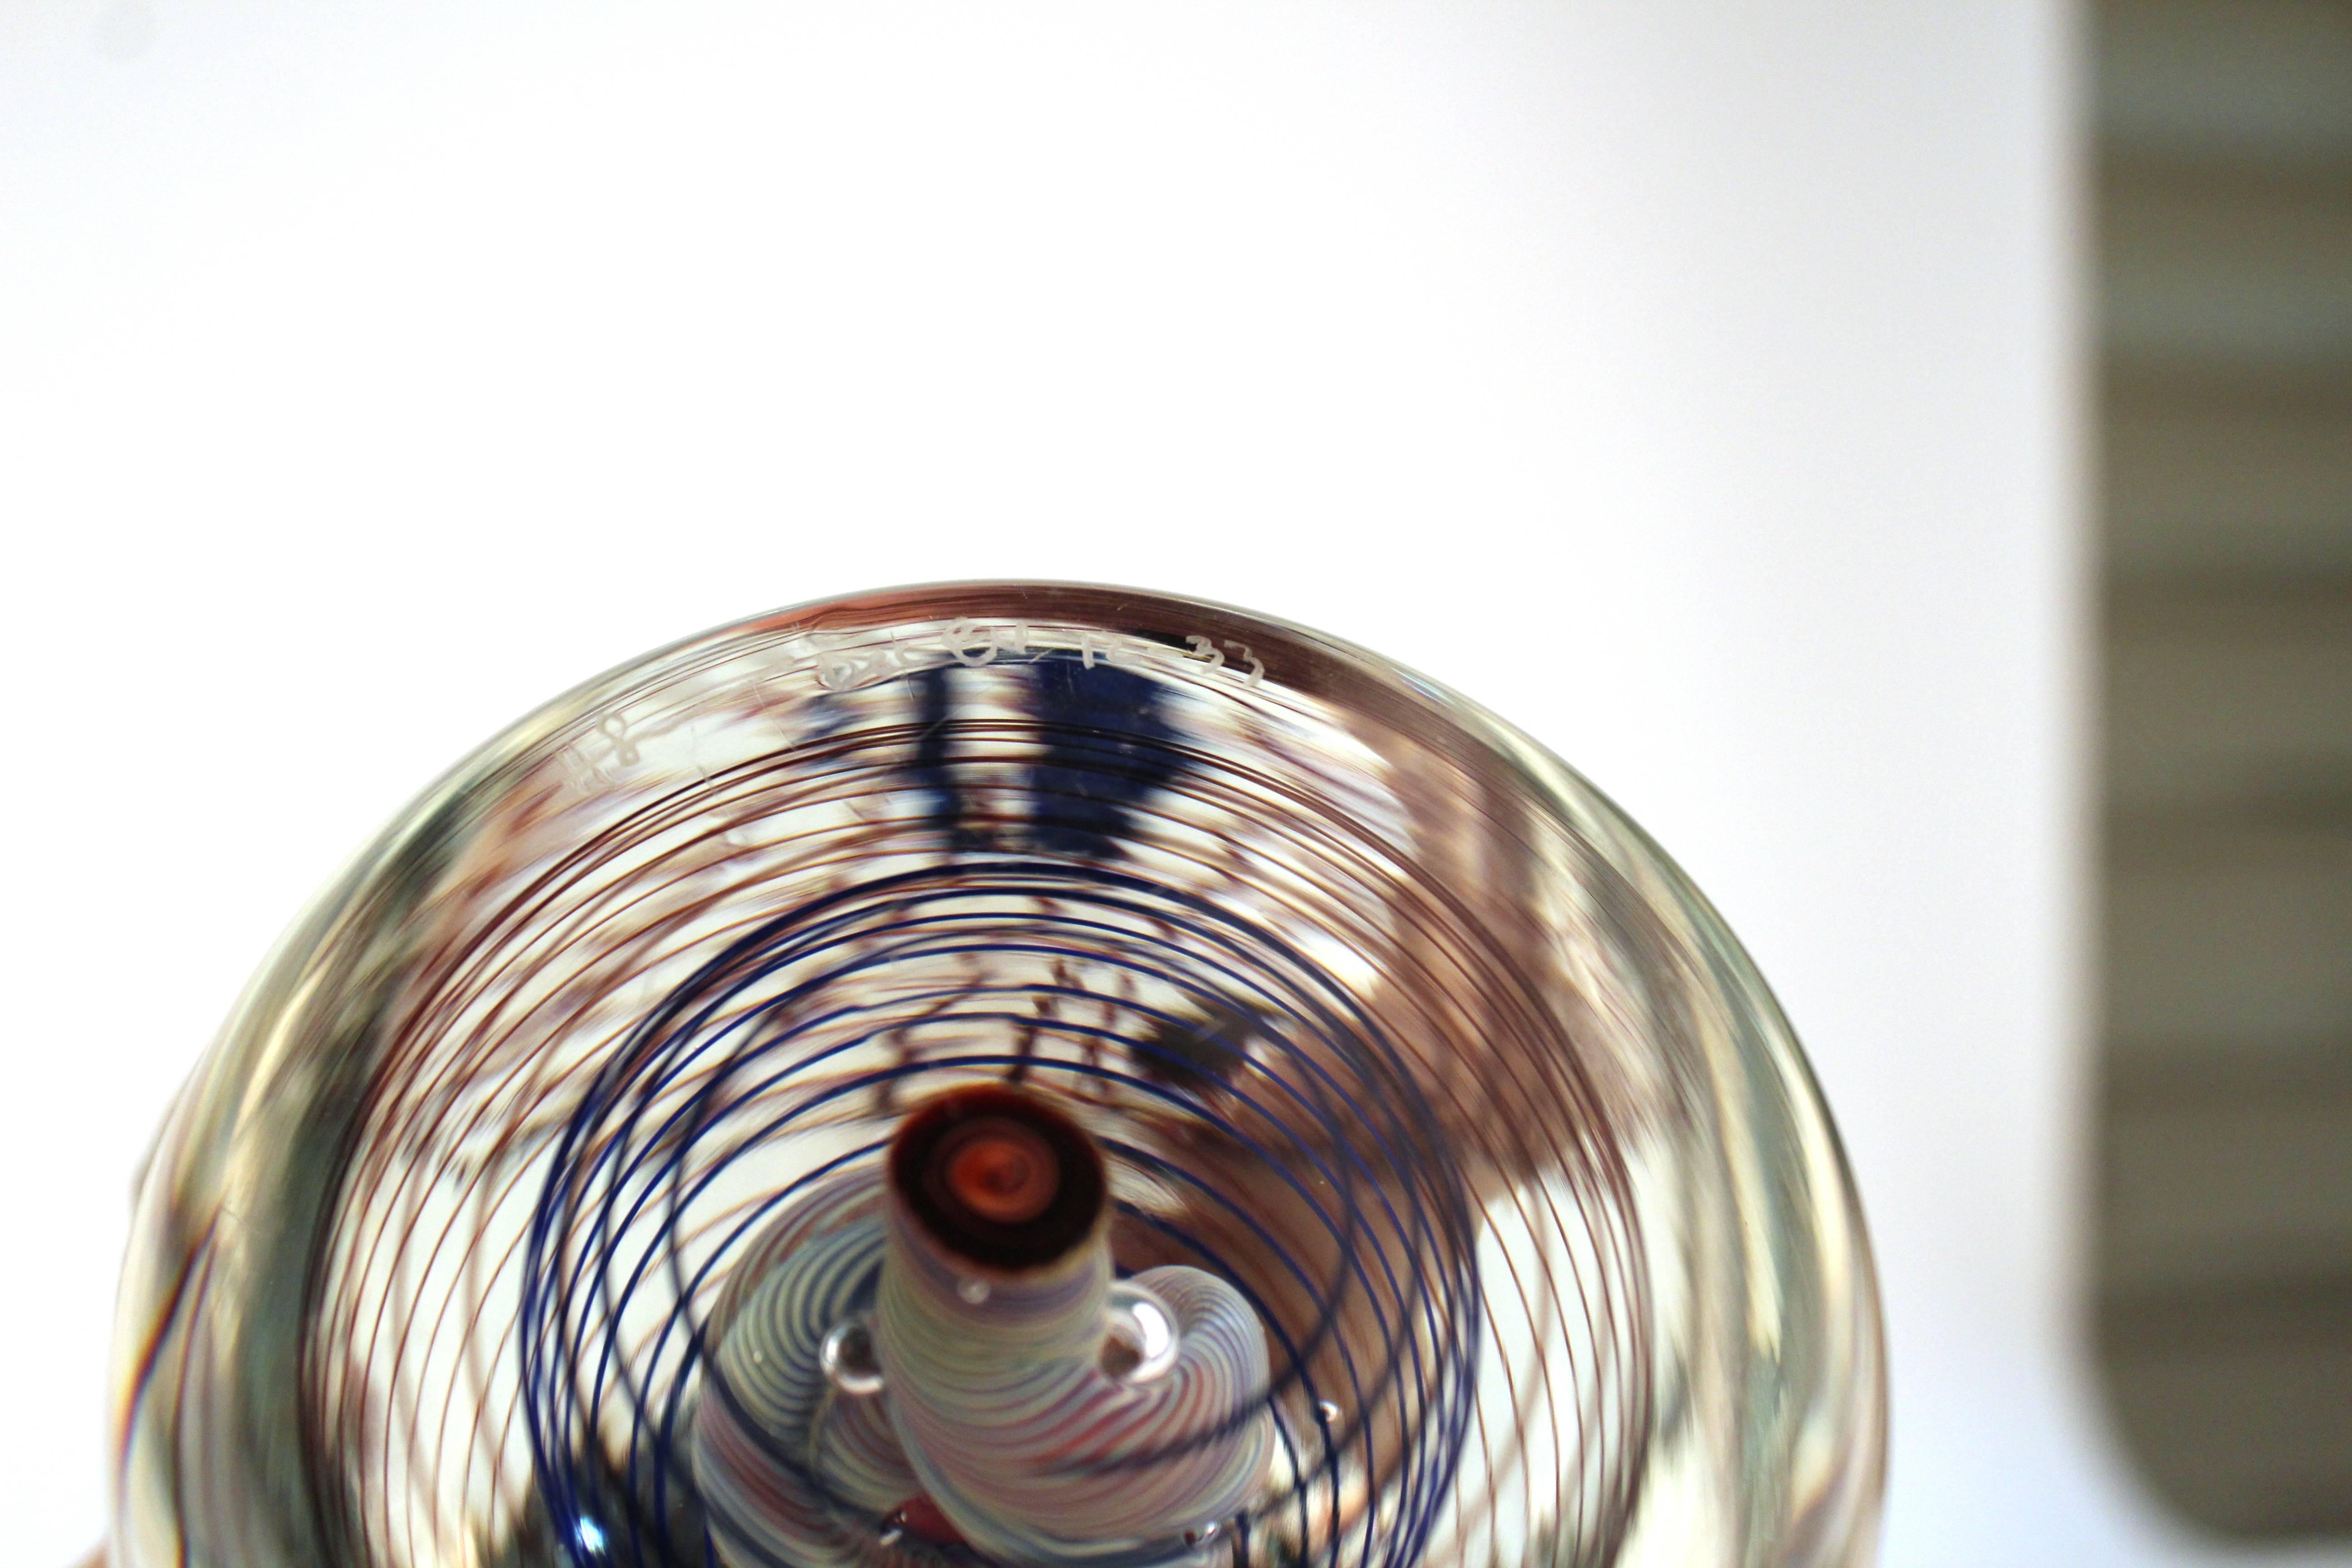 Spiral Art Glass Object 2